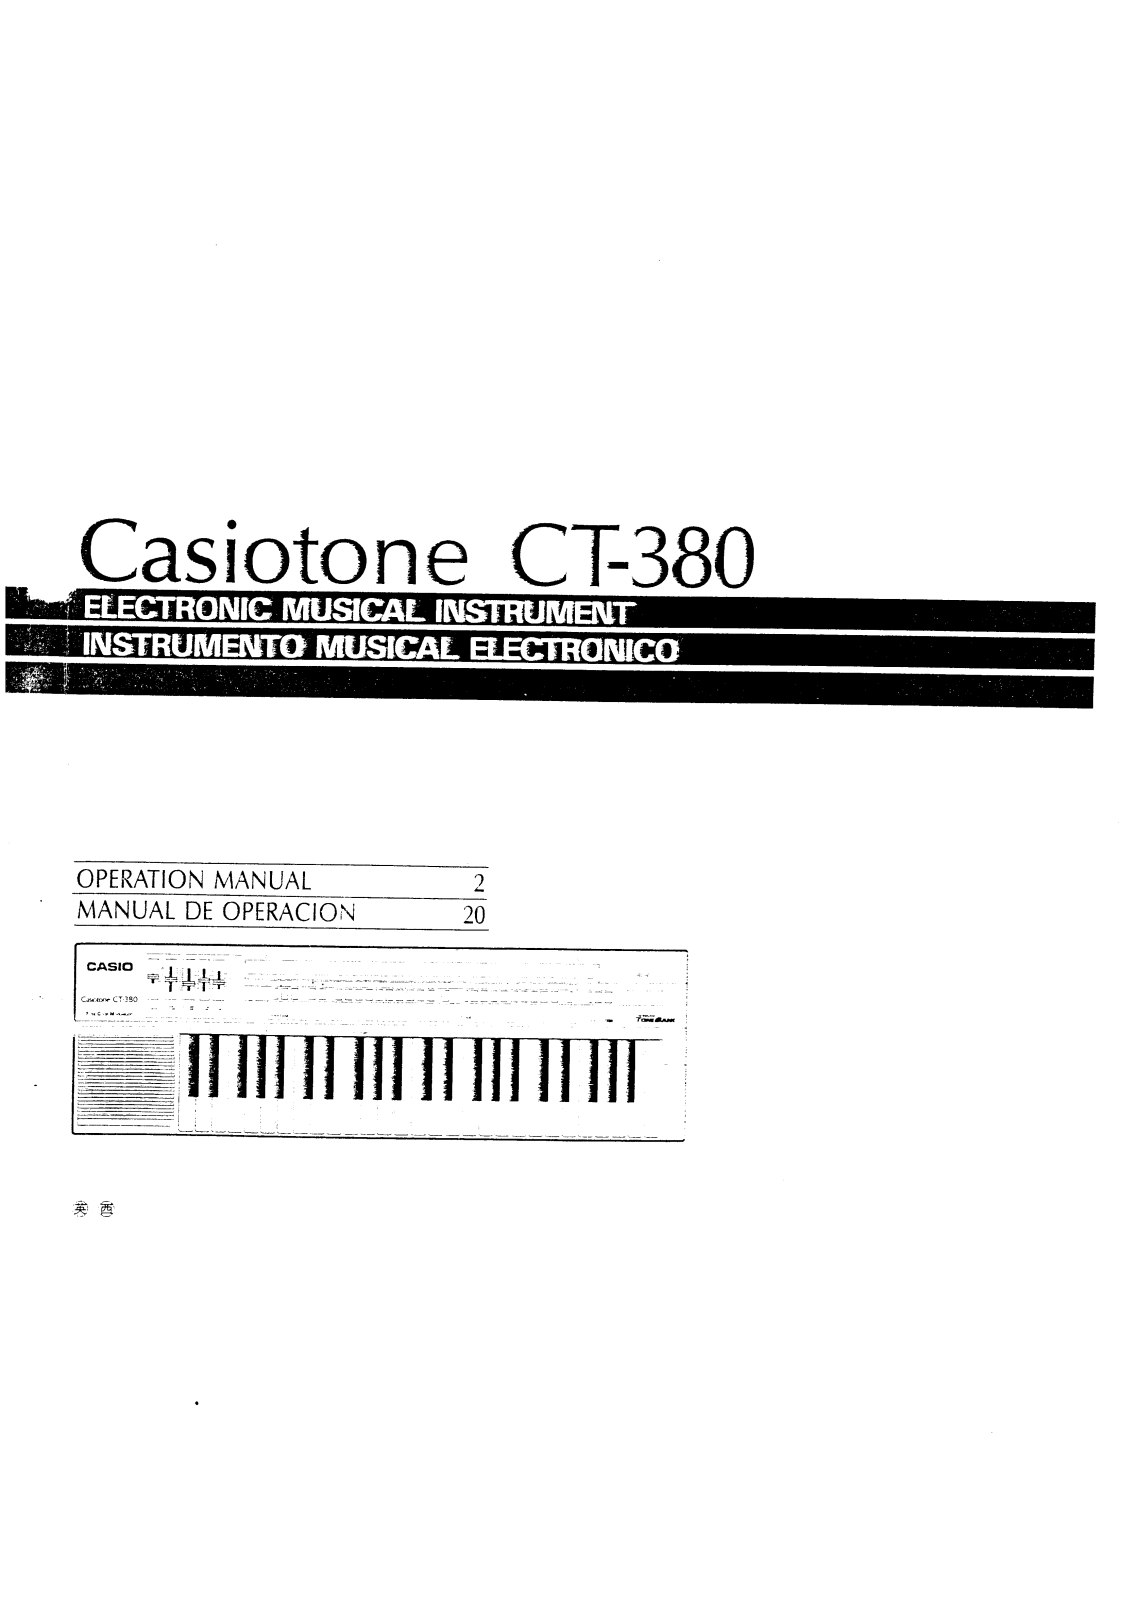 Casio CT-380 User Manual